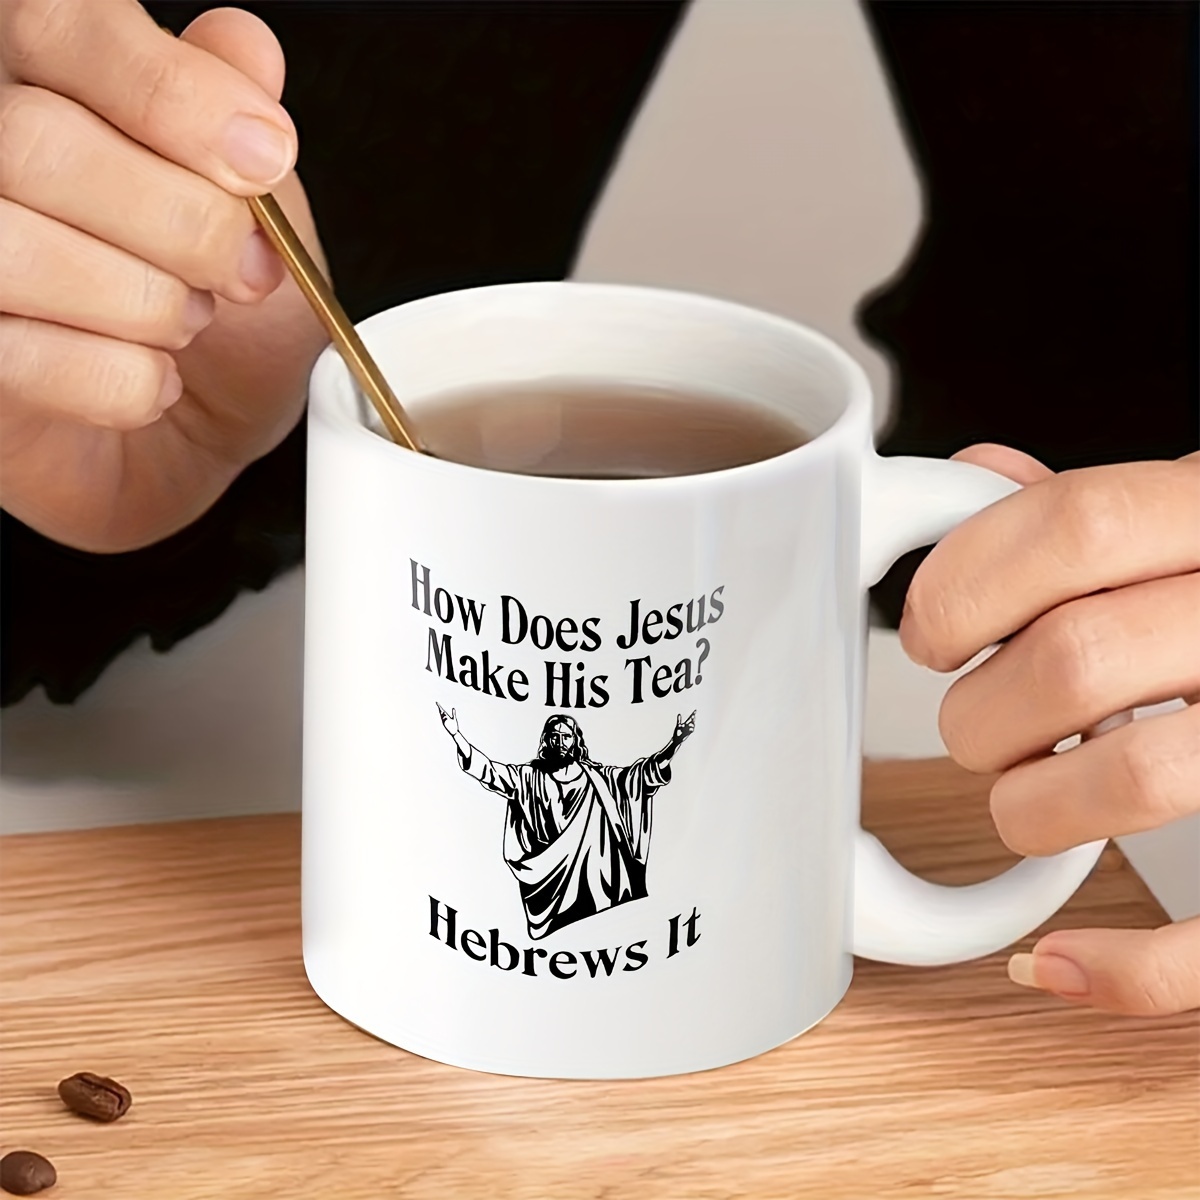 Funny Novelty Gift Mug, Ceramic Mug, Double-sided Design, How Does